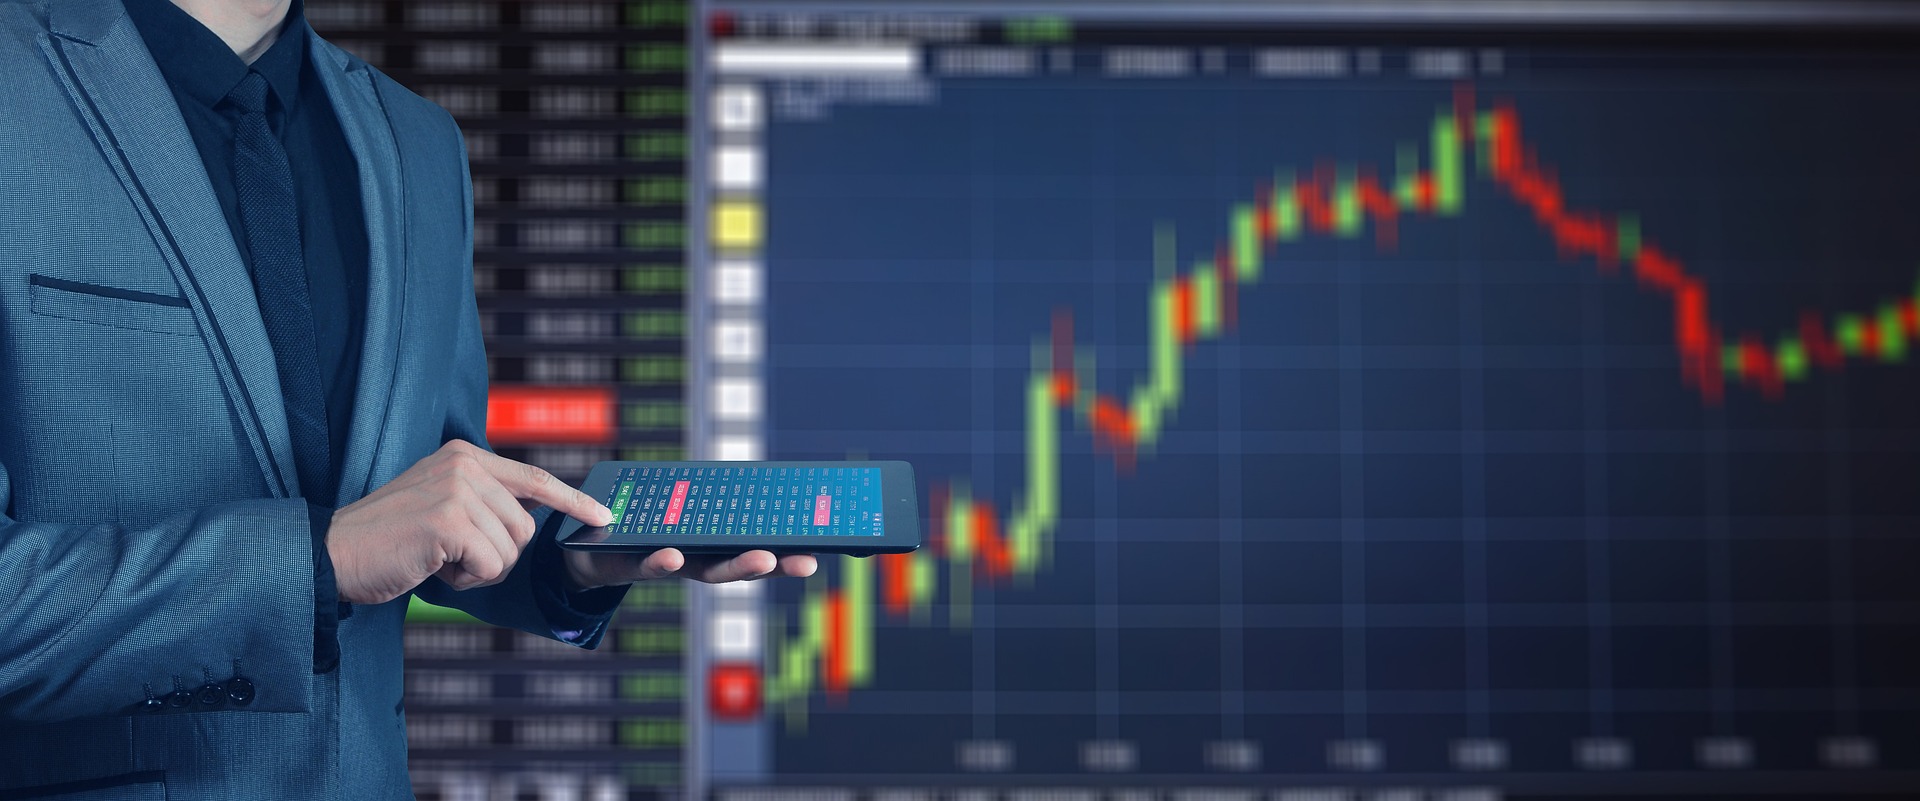 Une personne se tient avec une tablette devant un grand écran affichant l'évolution de la bourse